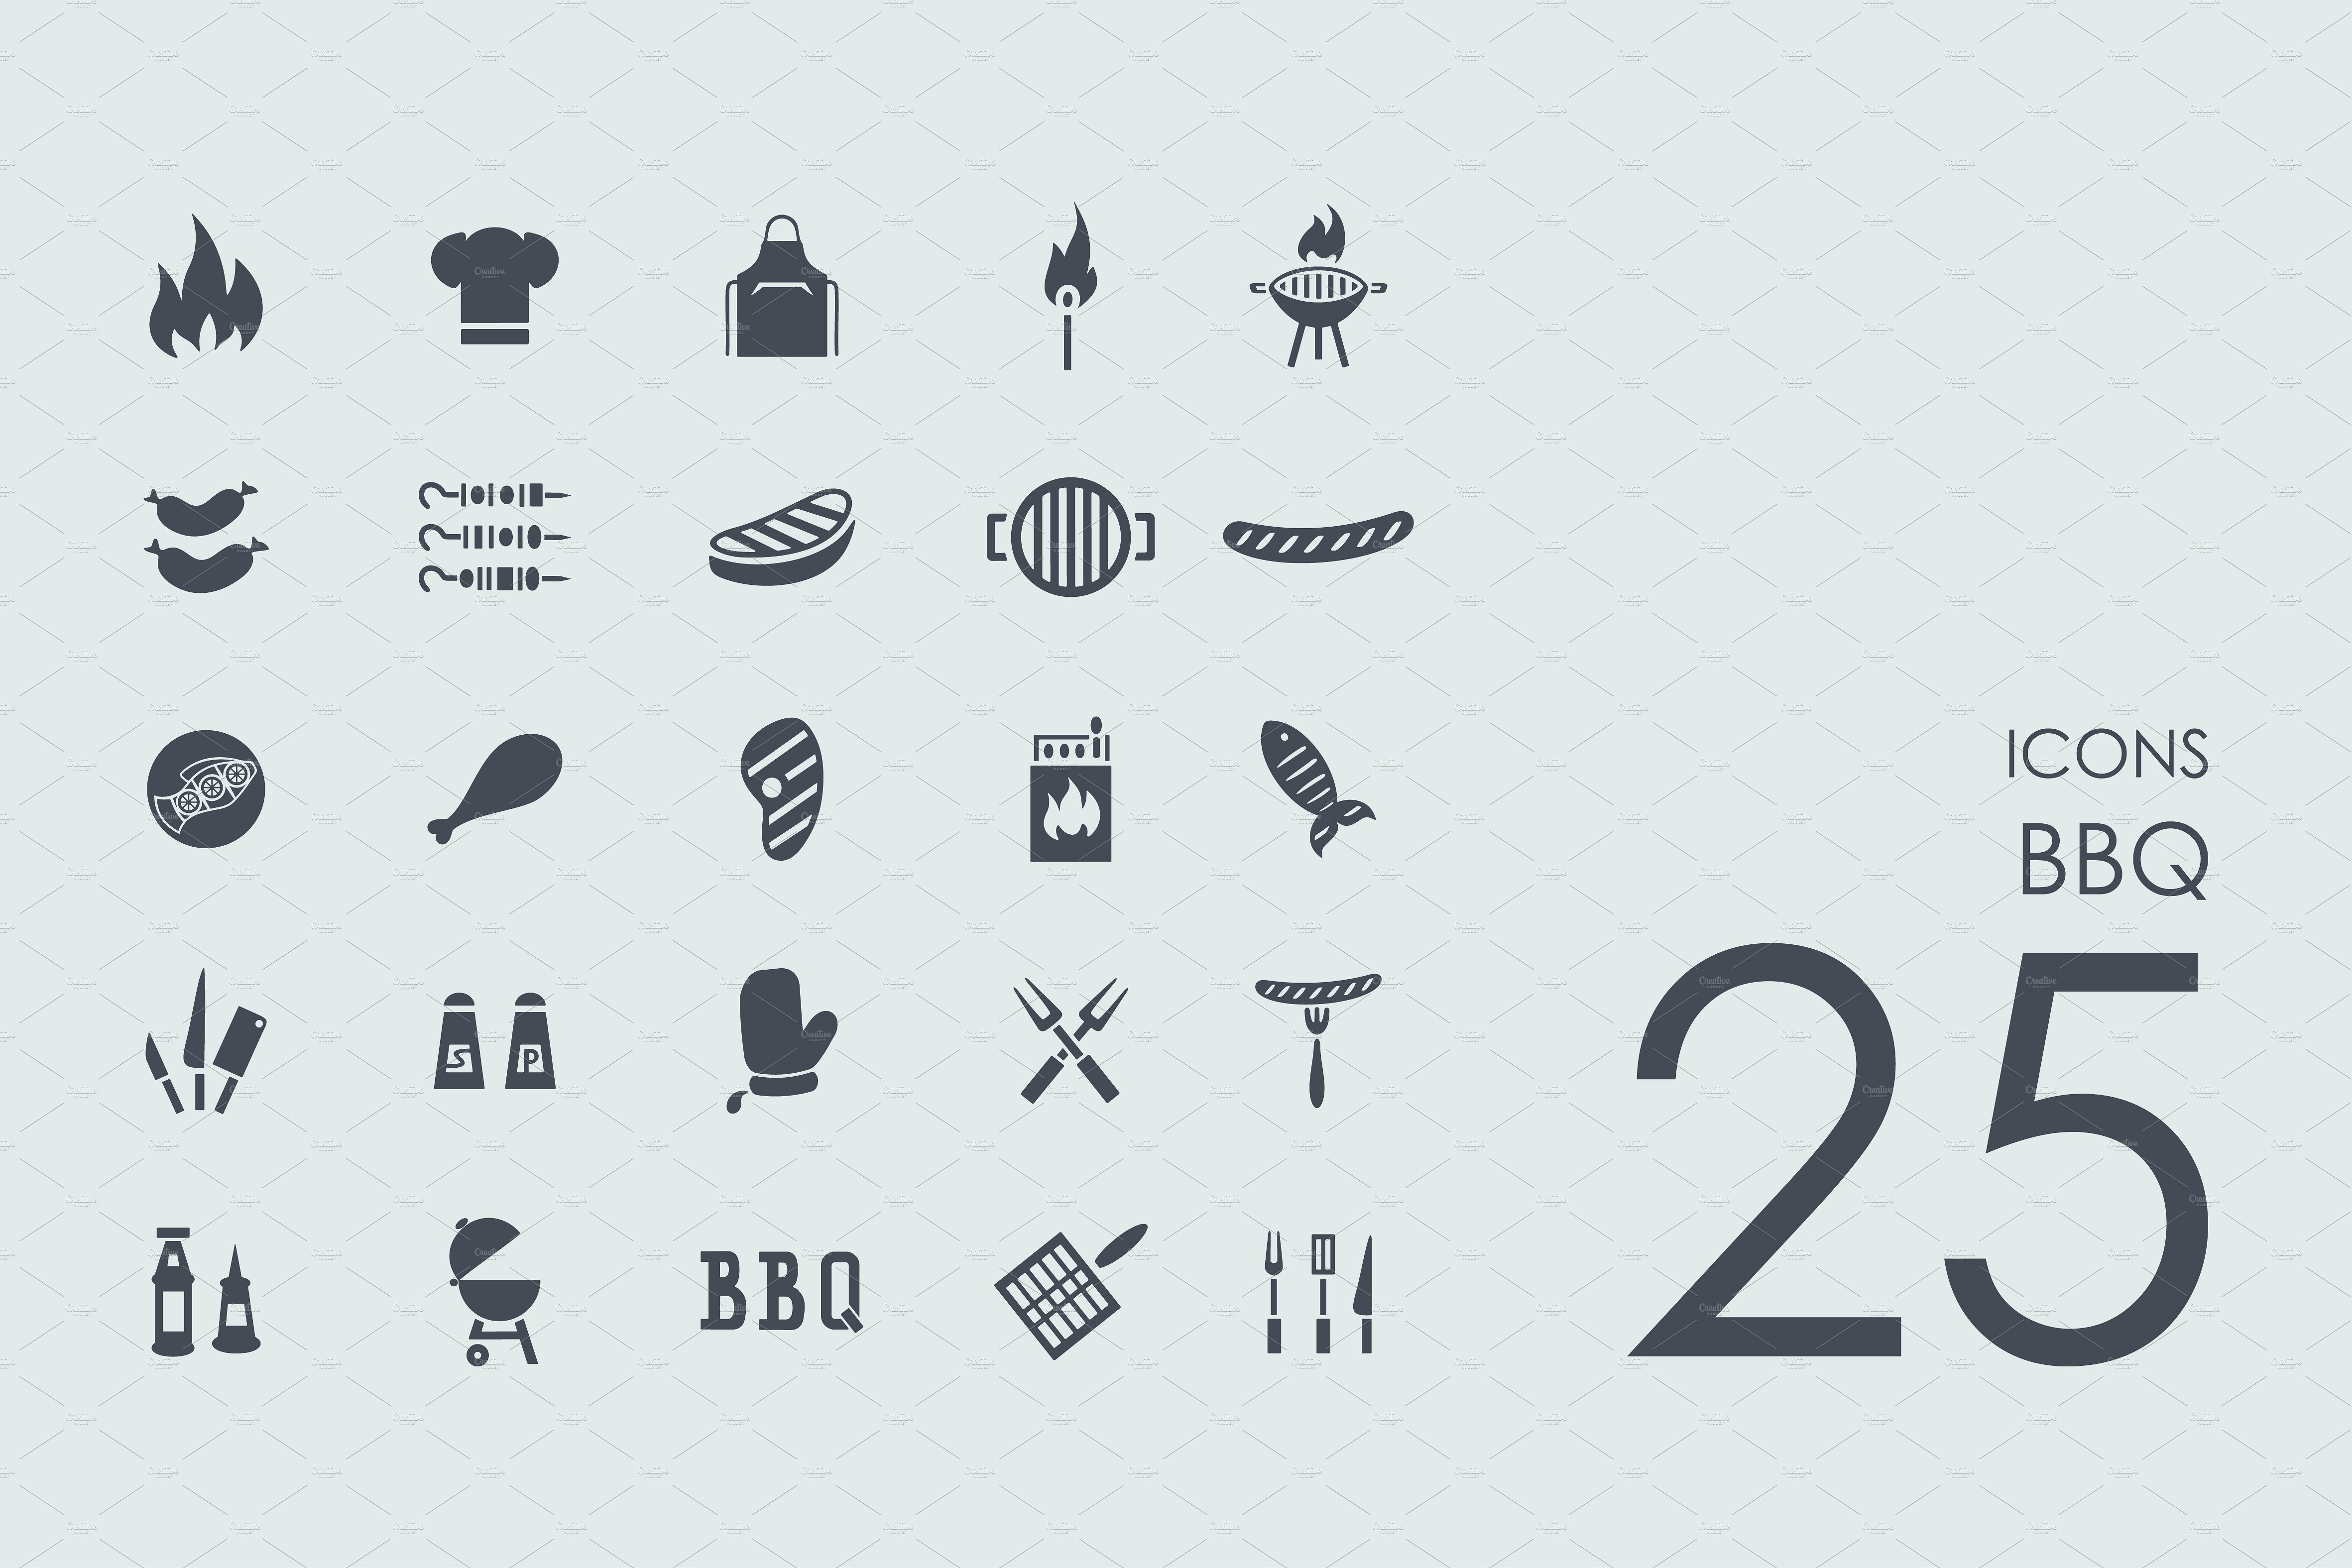 BBQ烧烤主题图标套装 25 BBQ icons #9119